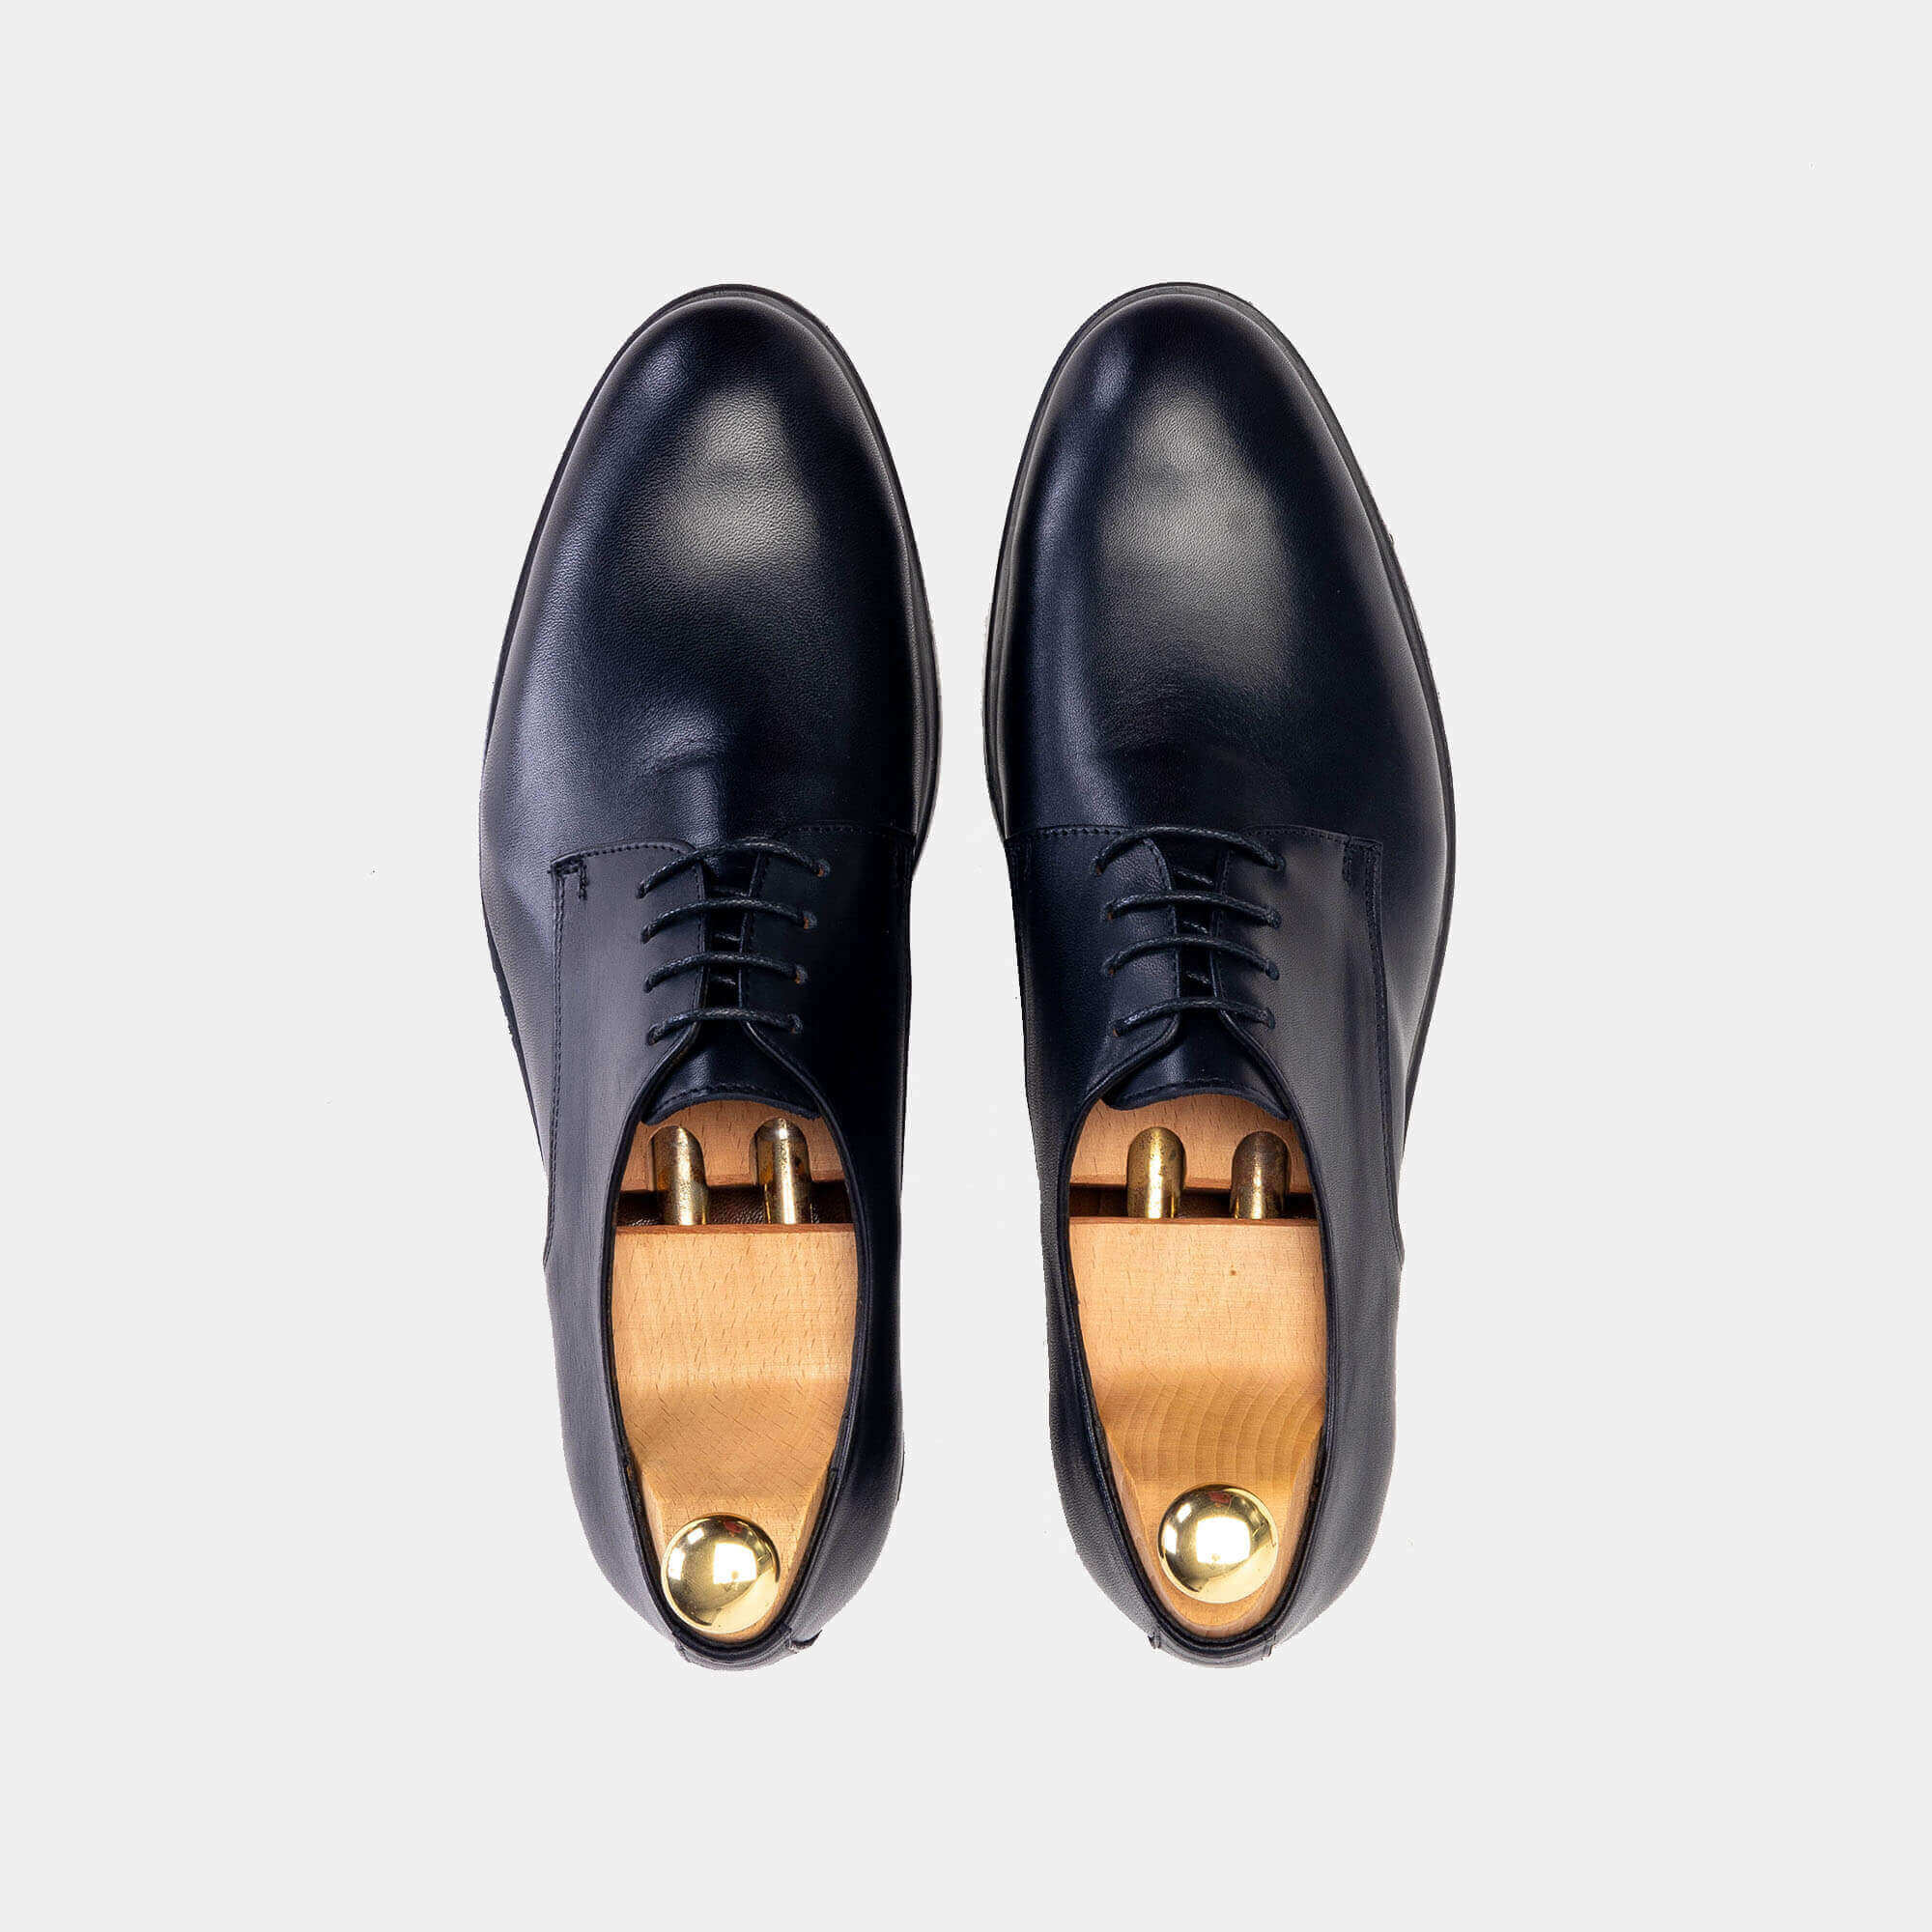 ''5122 Chaussure cuir Noir